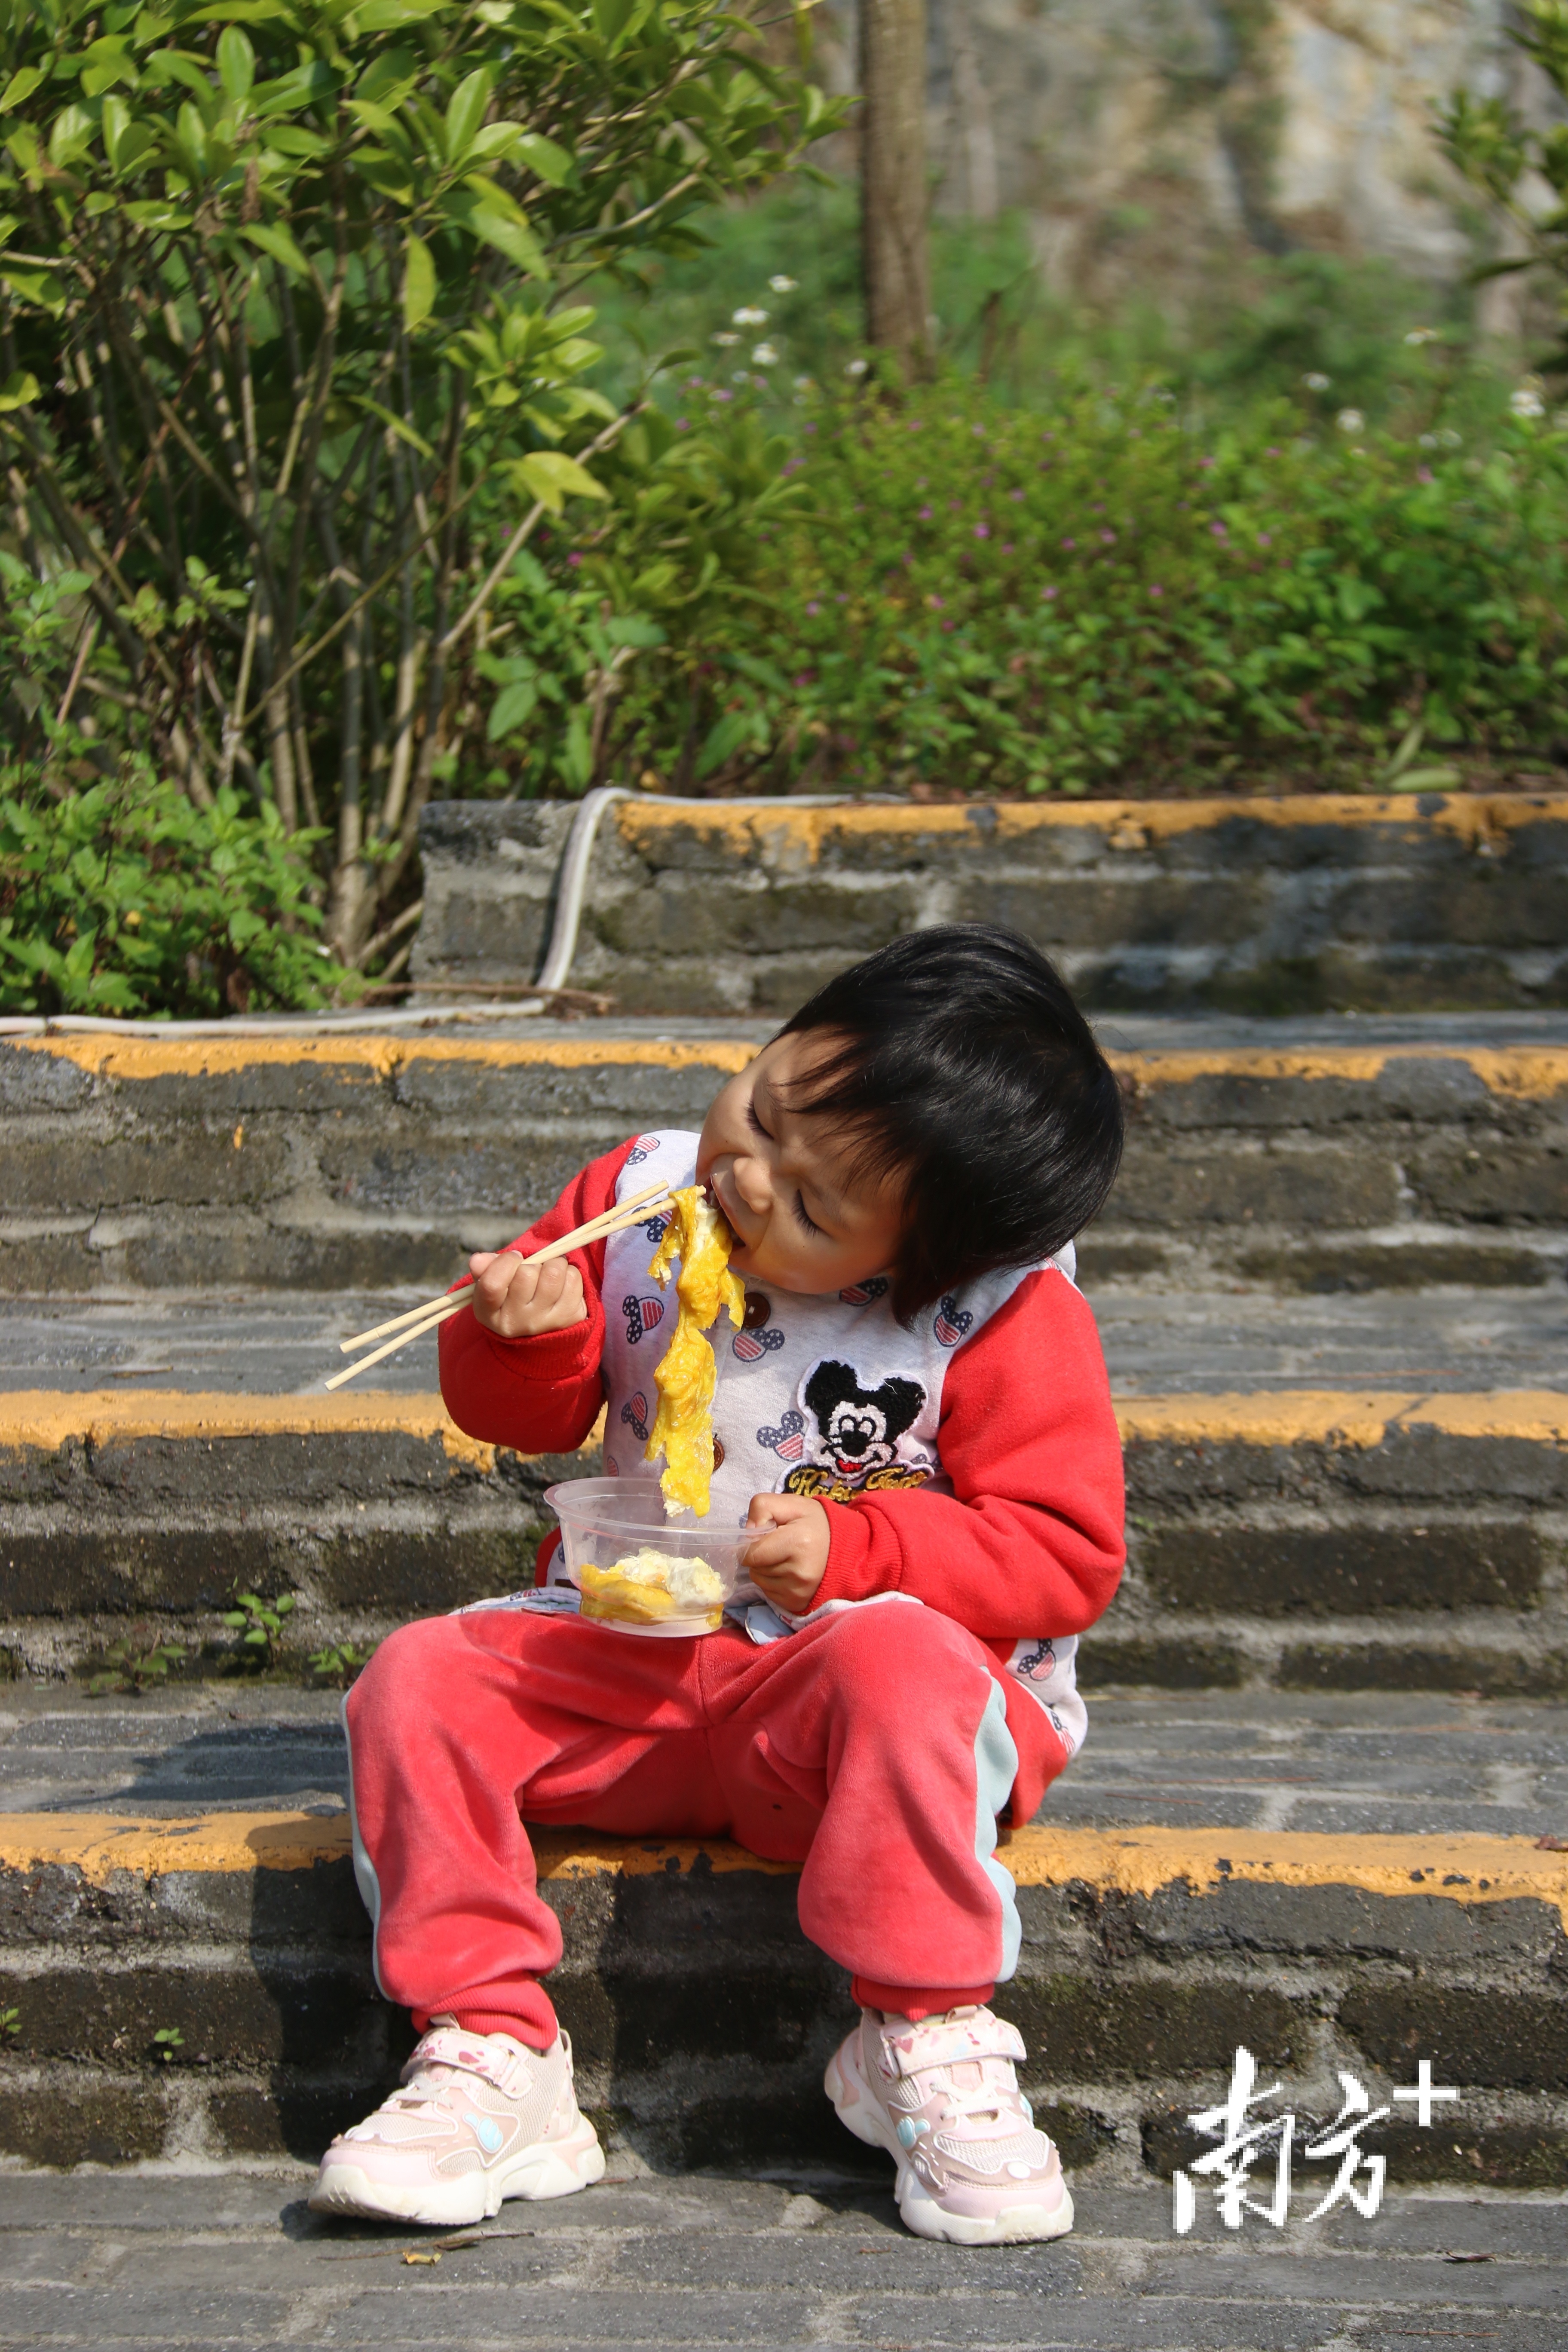 小孩坐在地上品尝九龙豆腐。陈咏怀 摄 